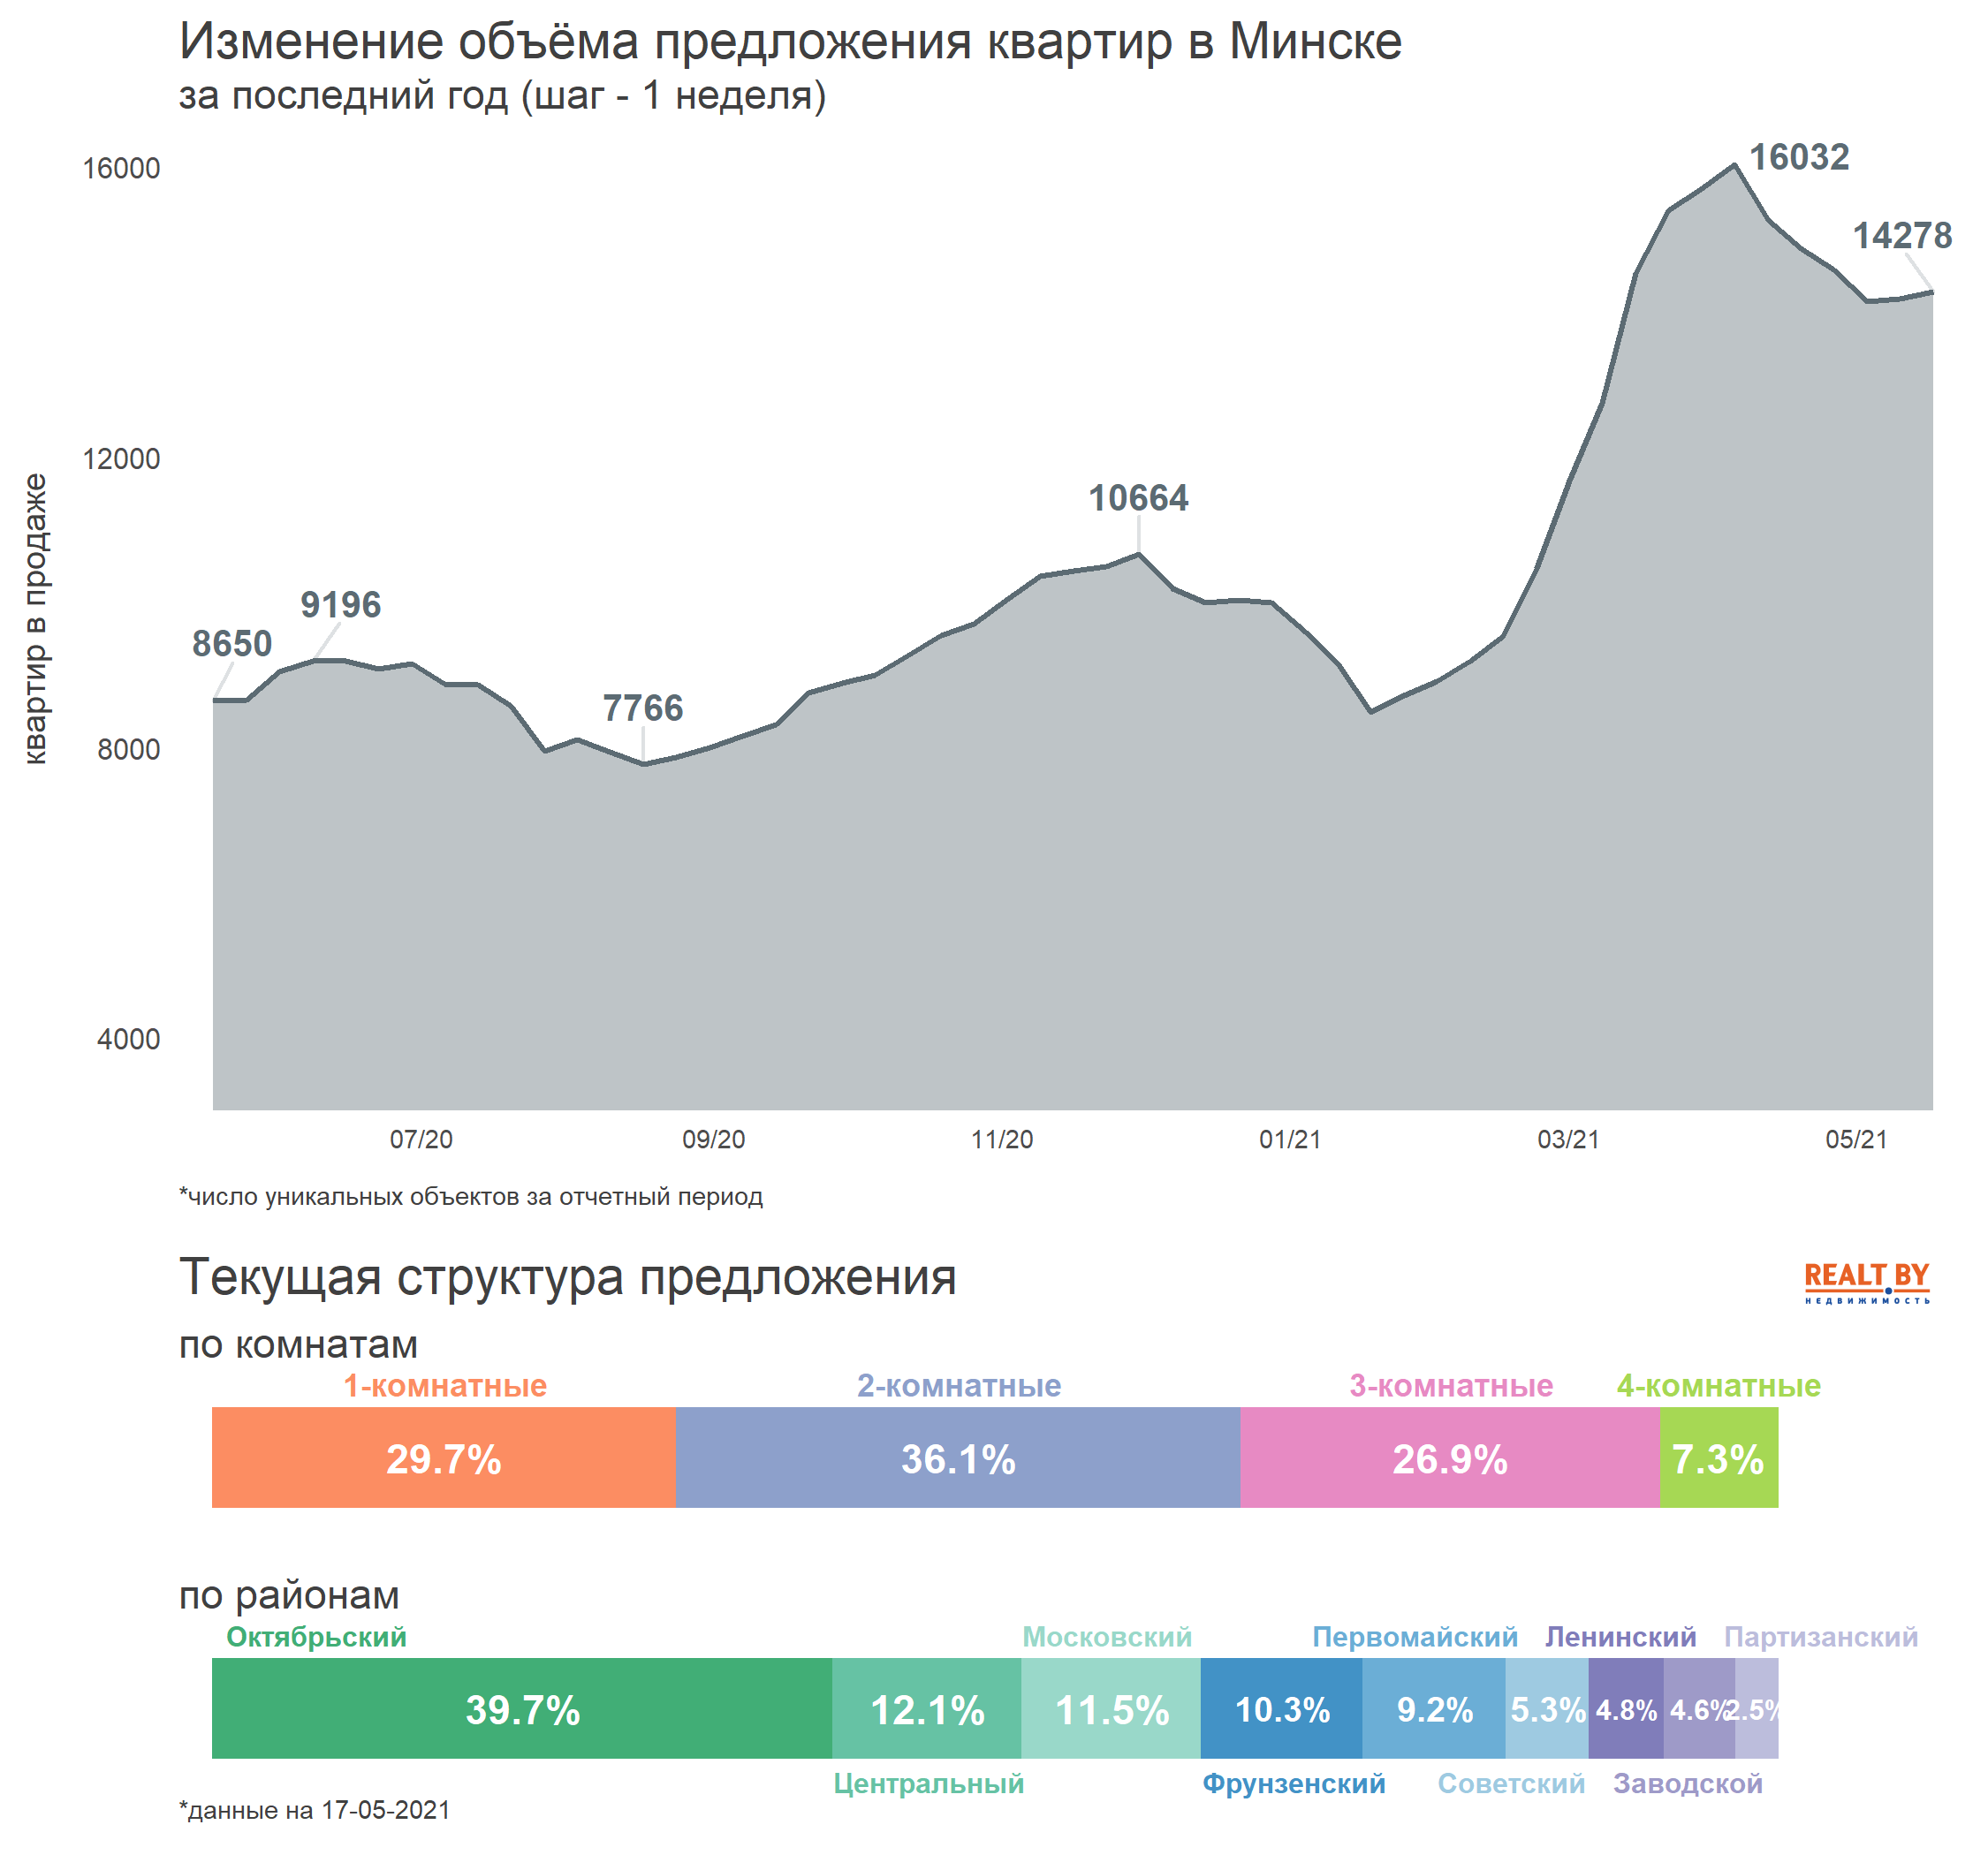 Мониторинг цен предложения квартир в Минске за 10-17 мая 2021 года